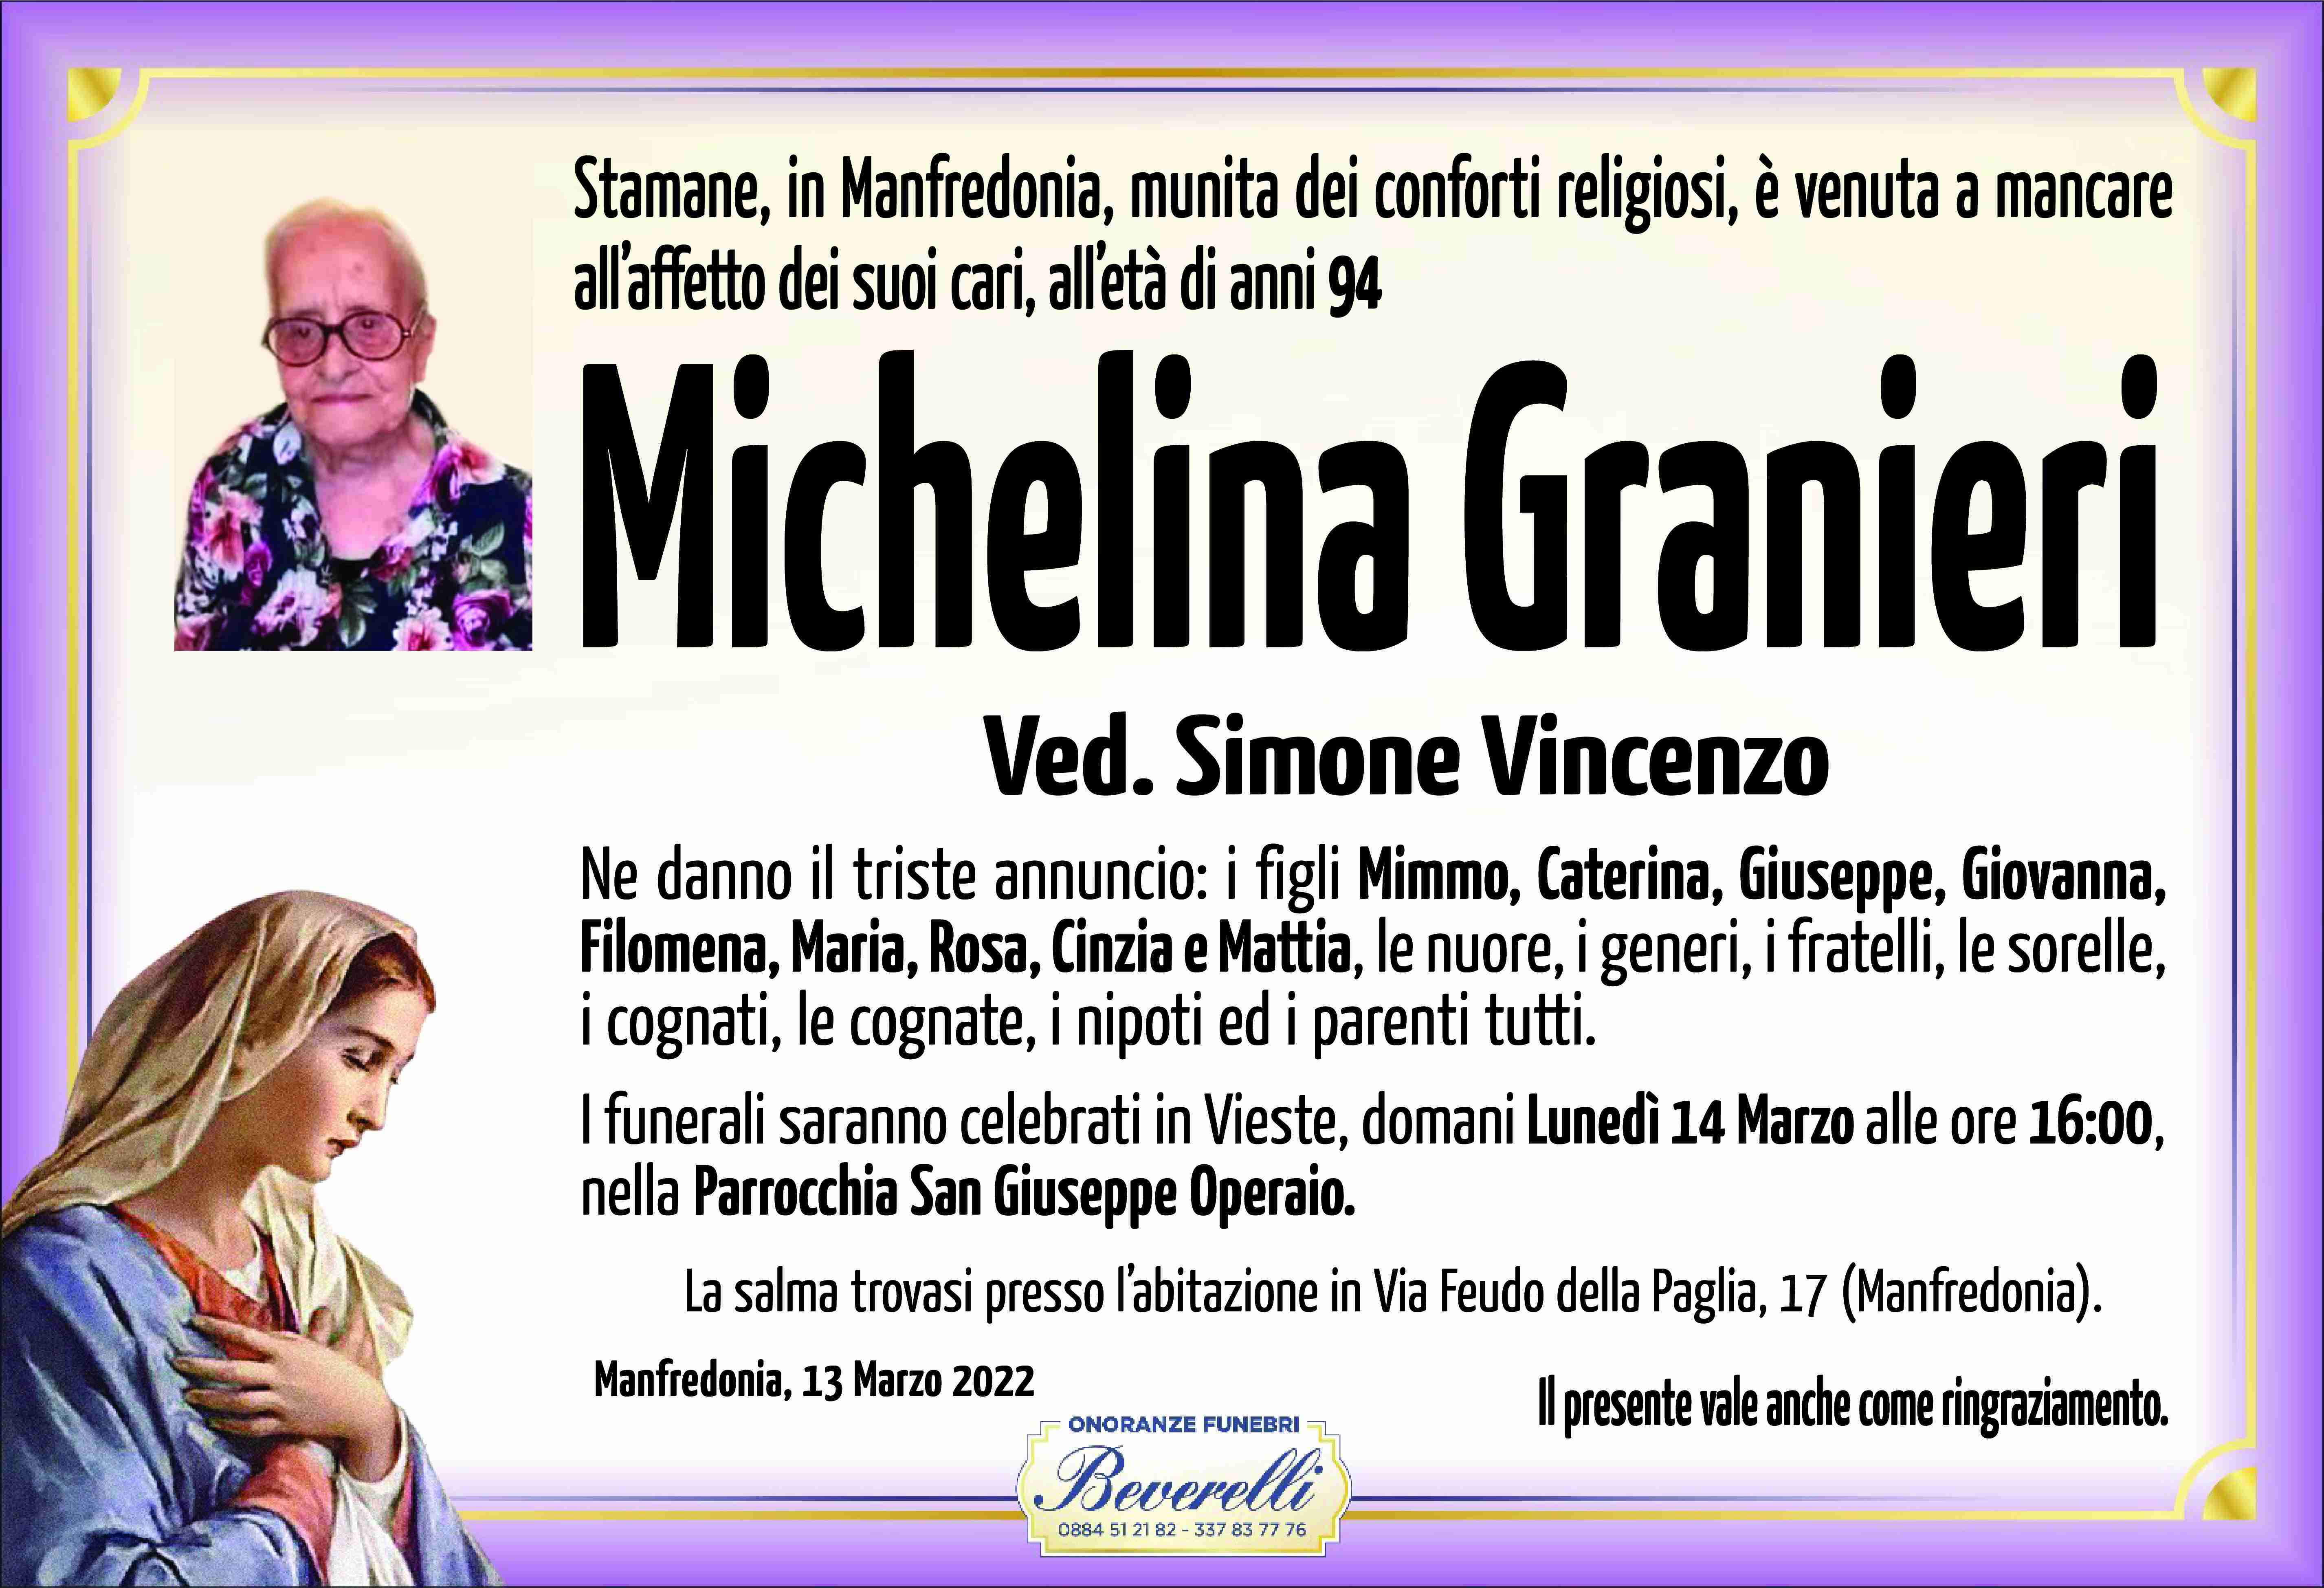 Michelina Granieri